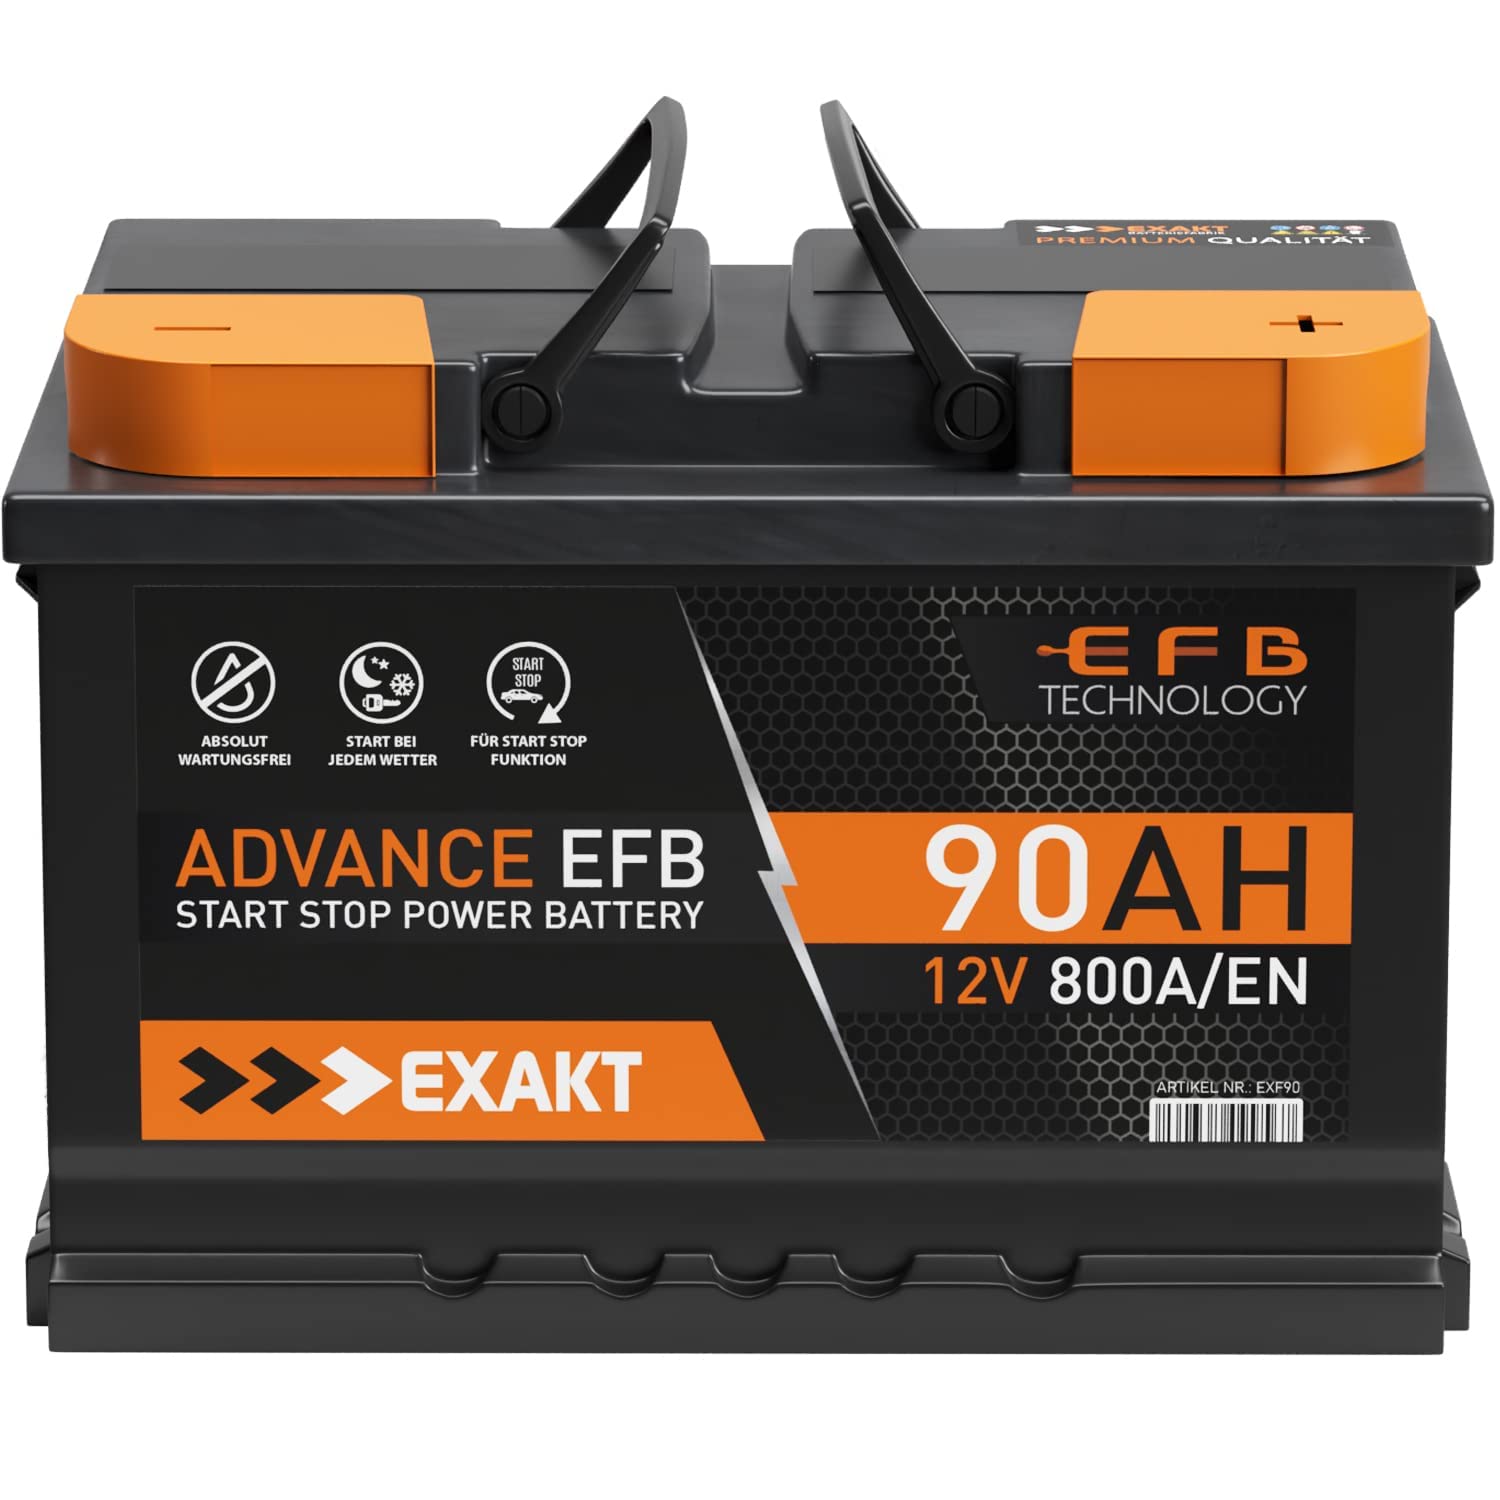 EXAKT EFB Batterie 90Ah 12V 800A/EN Start Stop Batterie ersetzt 70Ah 75Ah 80Ah Autobatterie Starterbatterie von Exakt